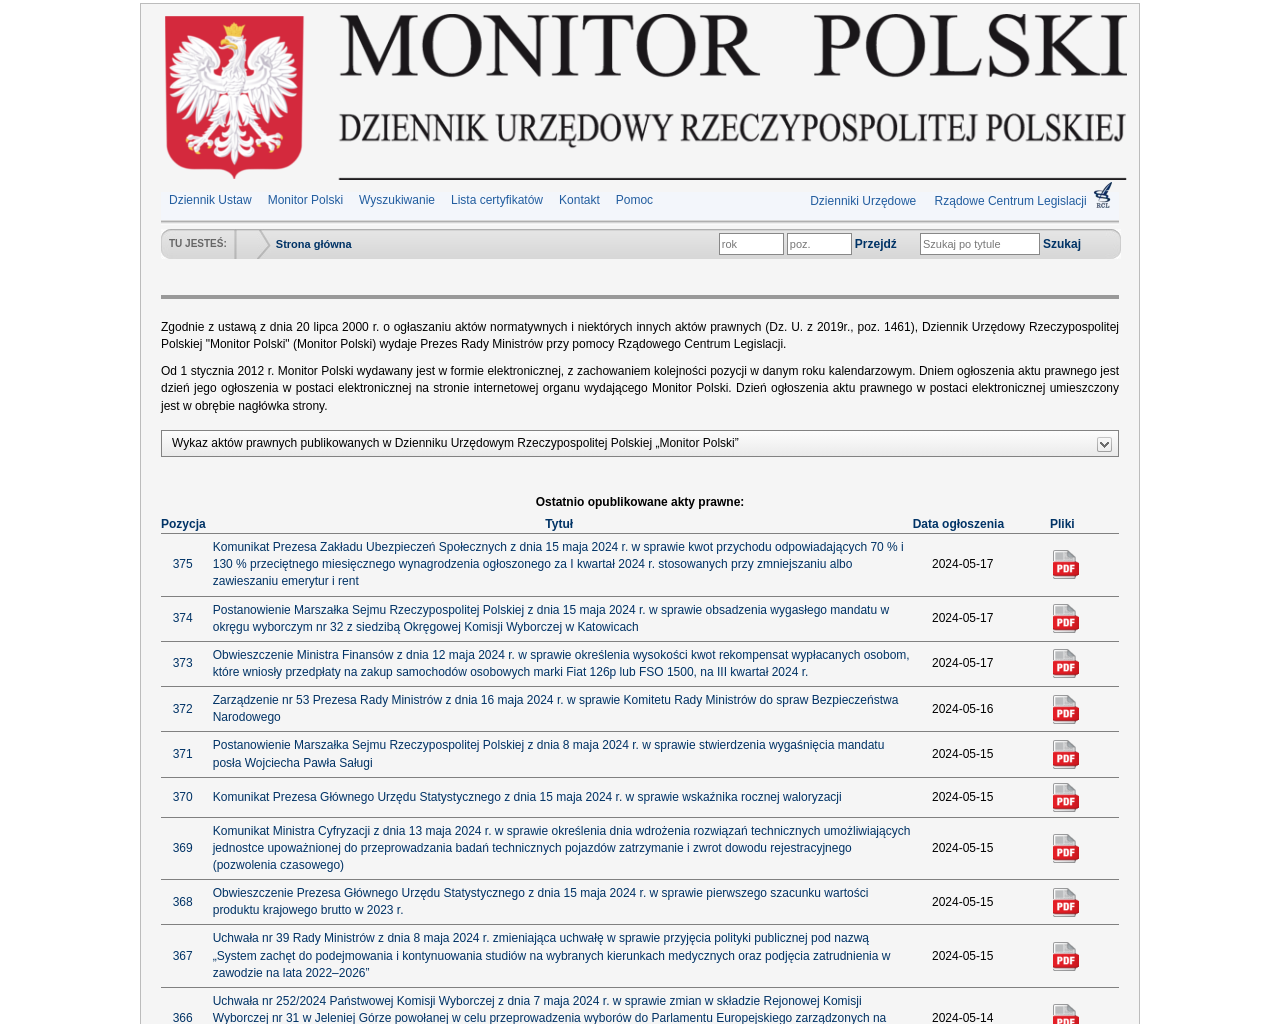 monitorpolski.gov.pl